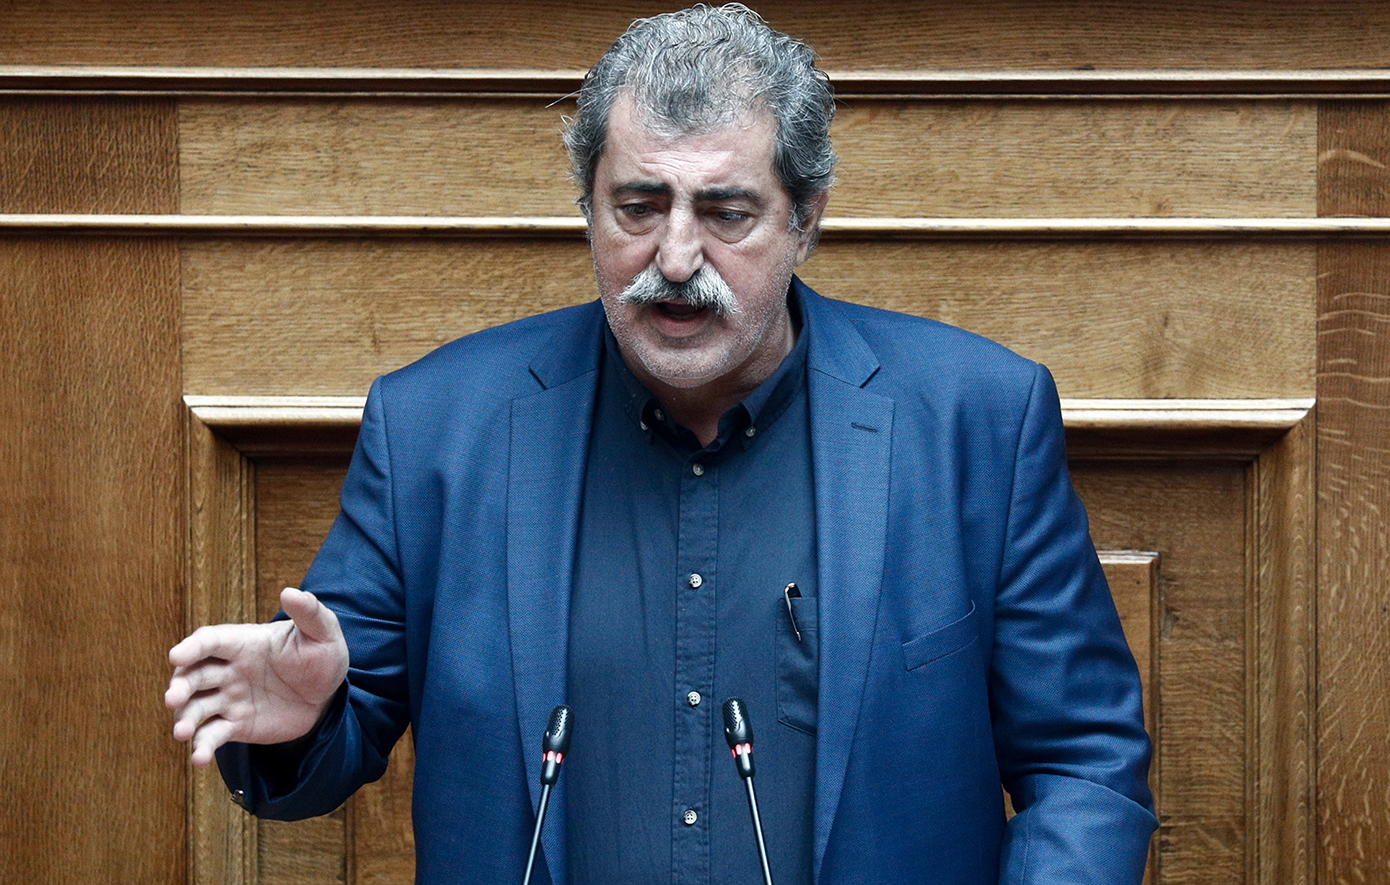 Πολάκης: Σε ελεγχόμενο δεύτερο πολιτικό πόλο στην Κεντροαριστερά ο ΣΥΡΙΖΑ και προσωπικά εγώ δεν πρόκειται να βάλουμε πλάτη